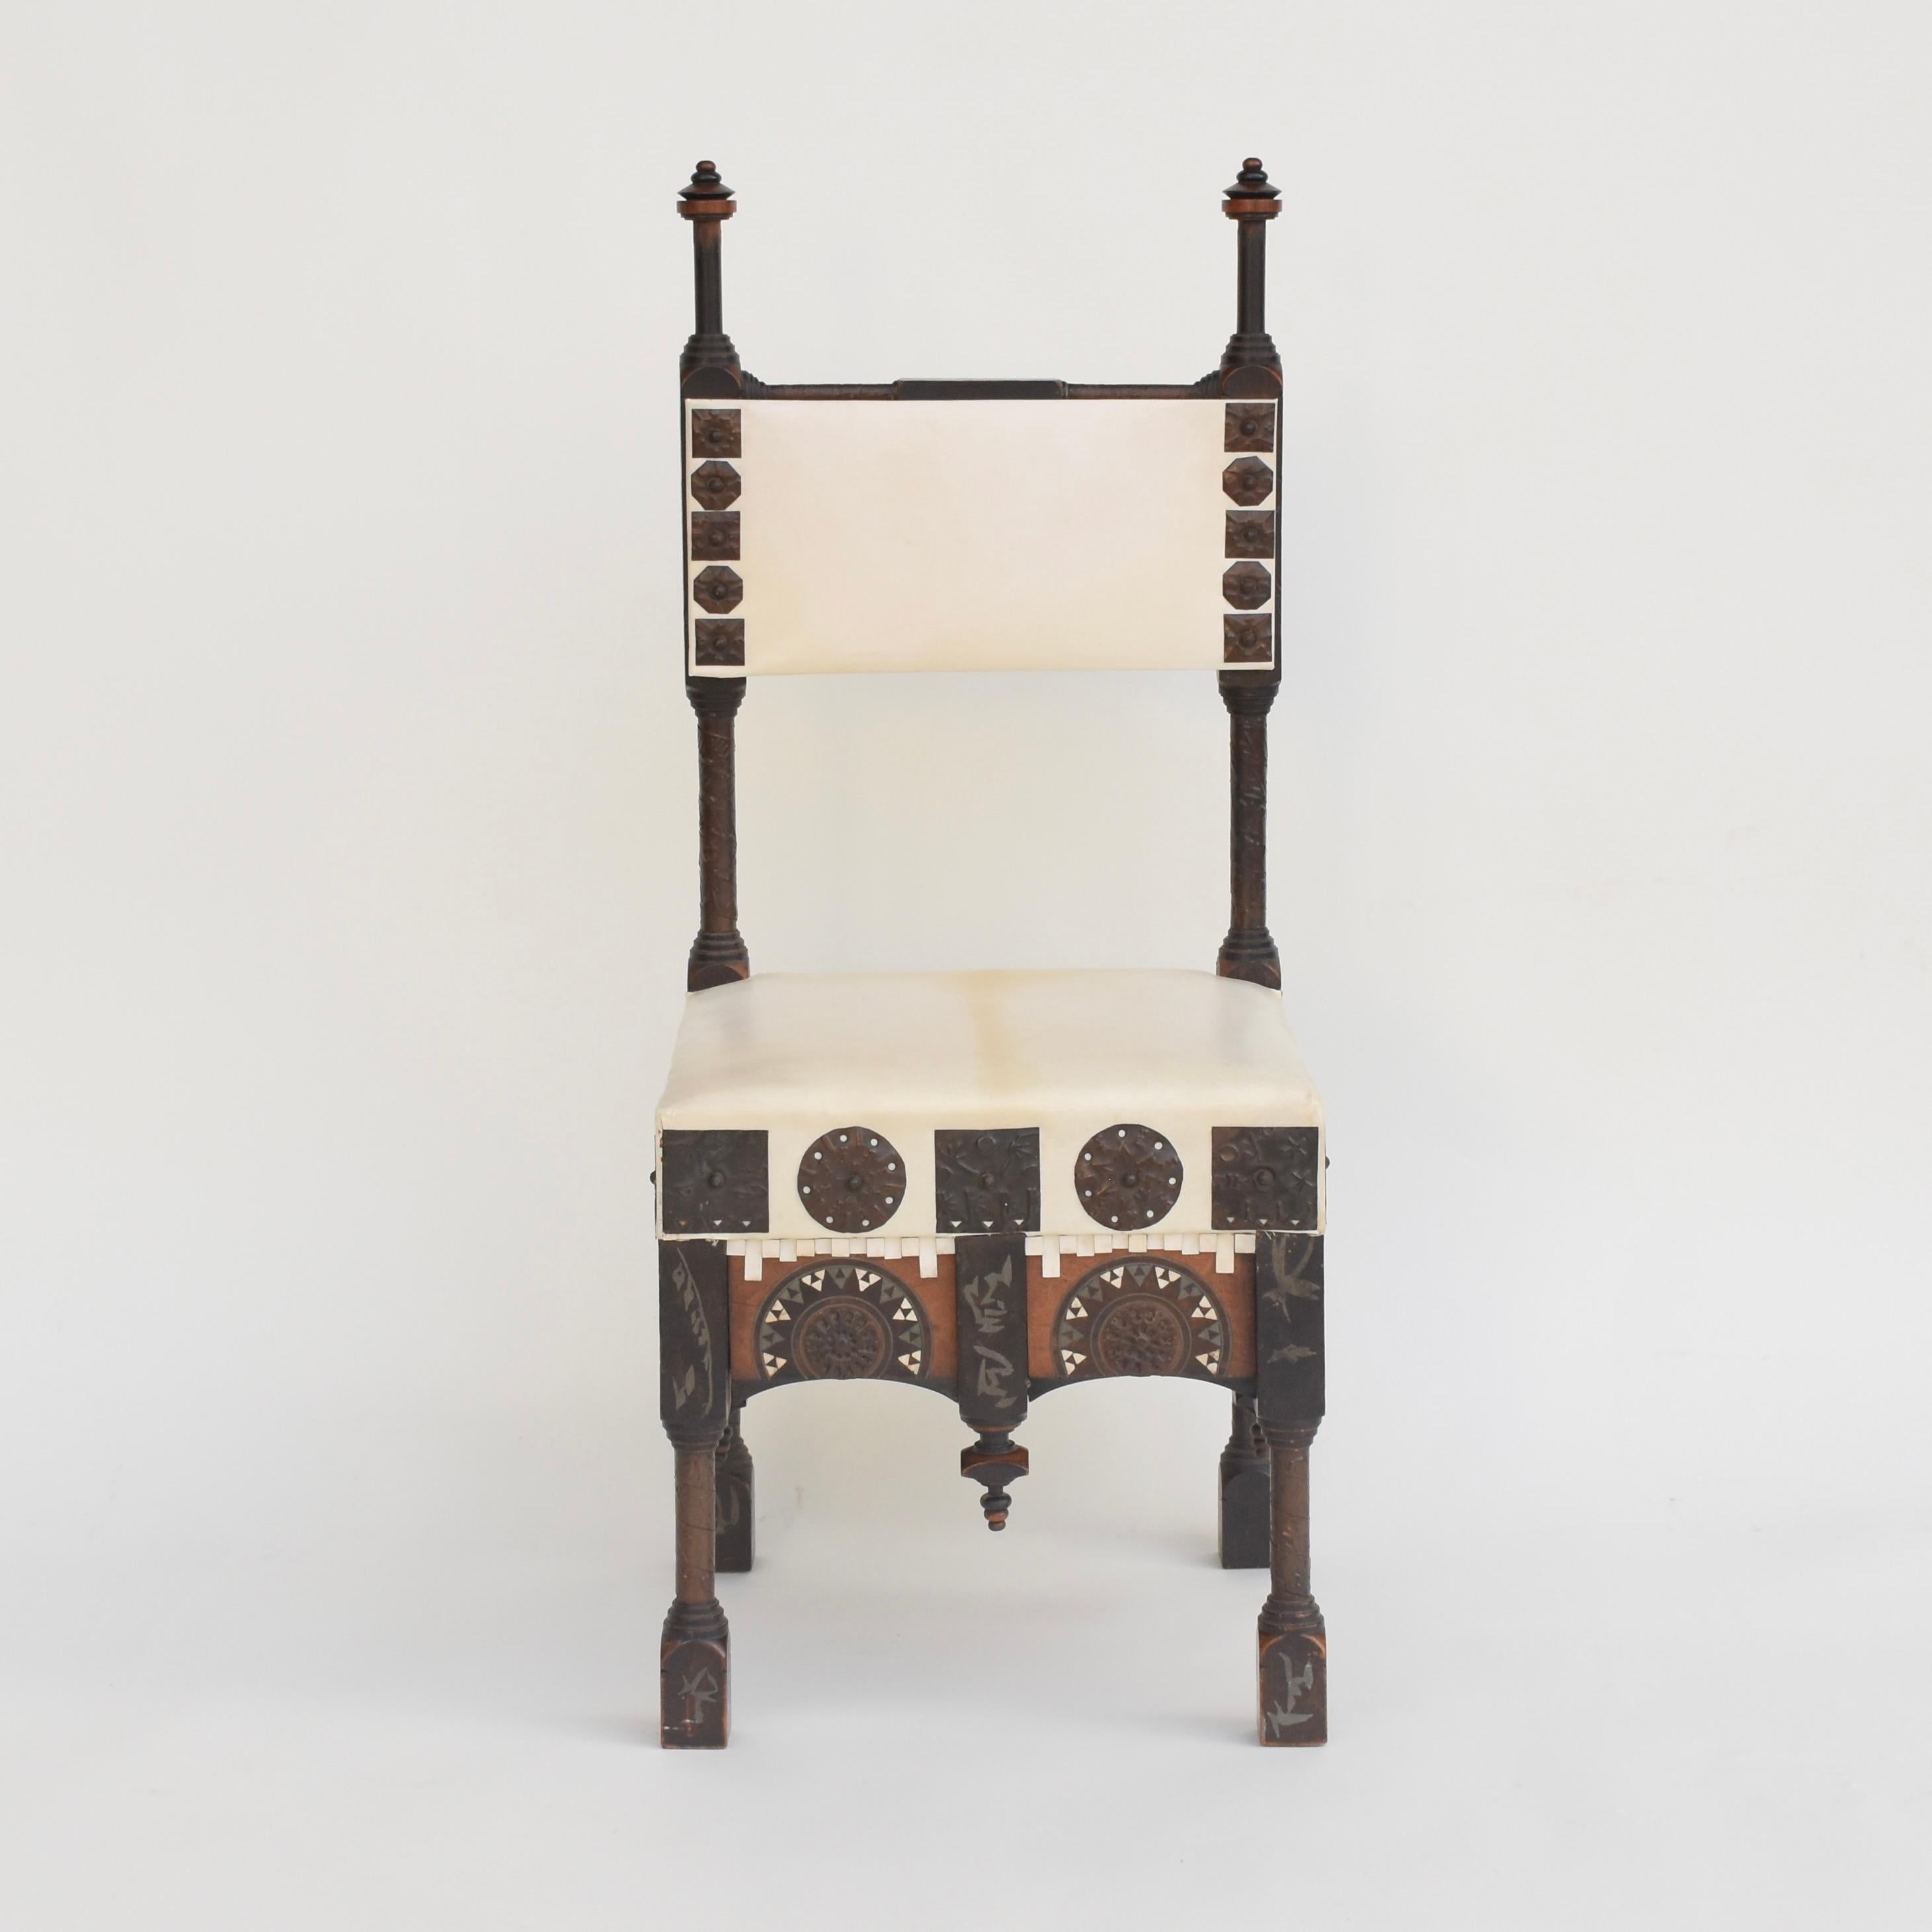 Magnifique chaise de Carlo Bugatti en bois partiellement ébonisé, ornée d'incrustations géométriques en métal et en os et de décorations en métal repoussé. Pieds et montants tournés recouverts de rubans de cuivre. Assise et dossier garnis de Vellum.